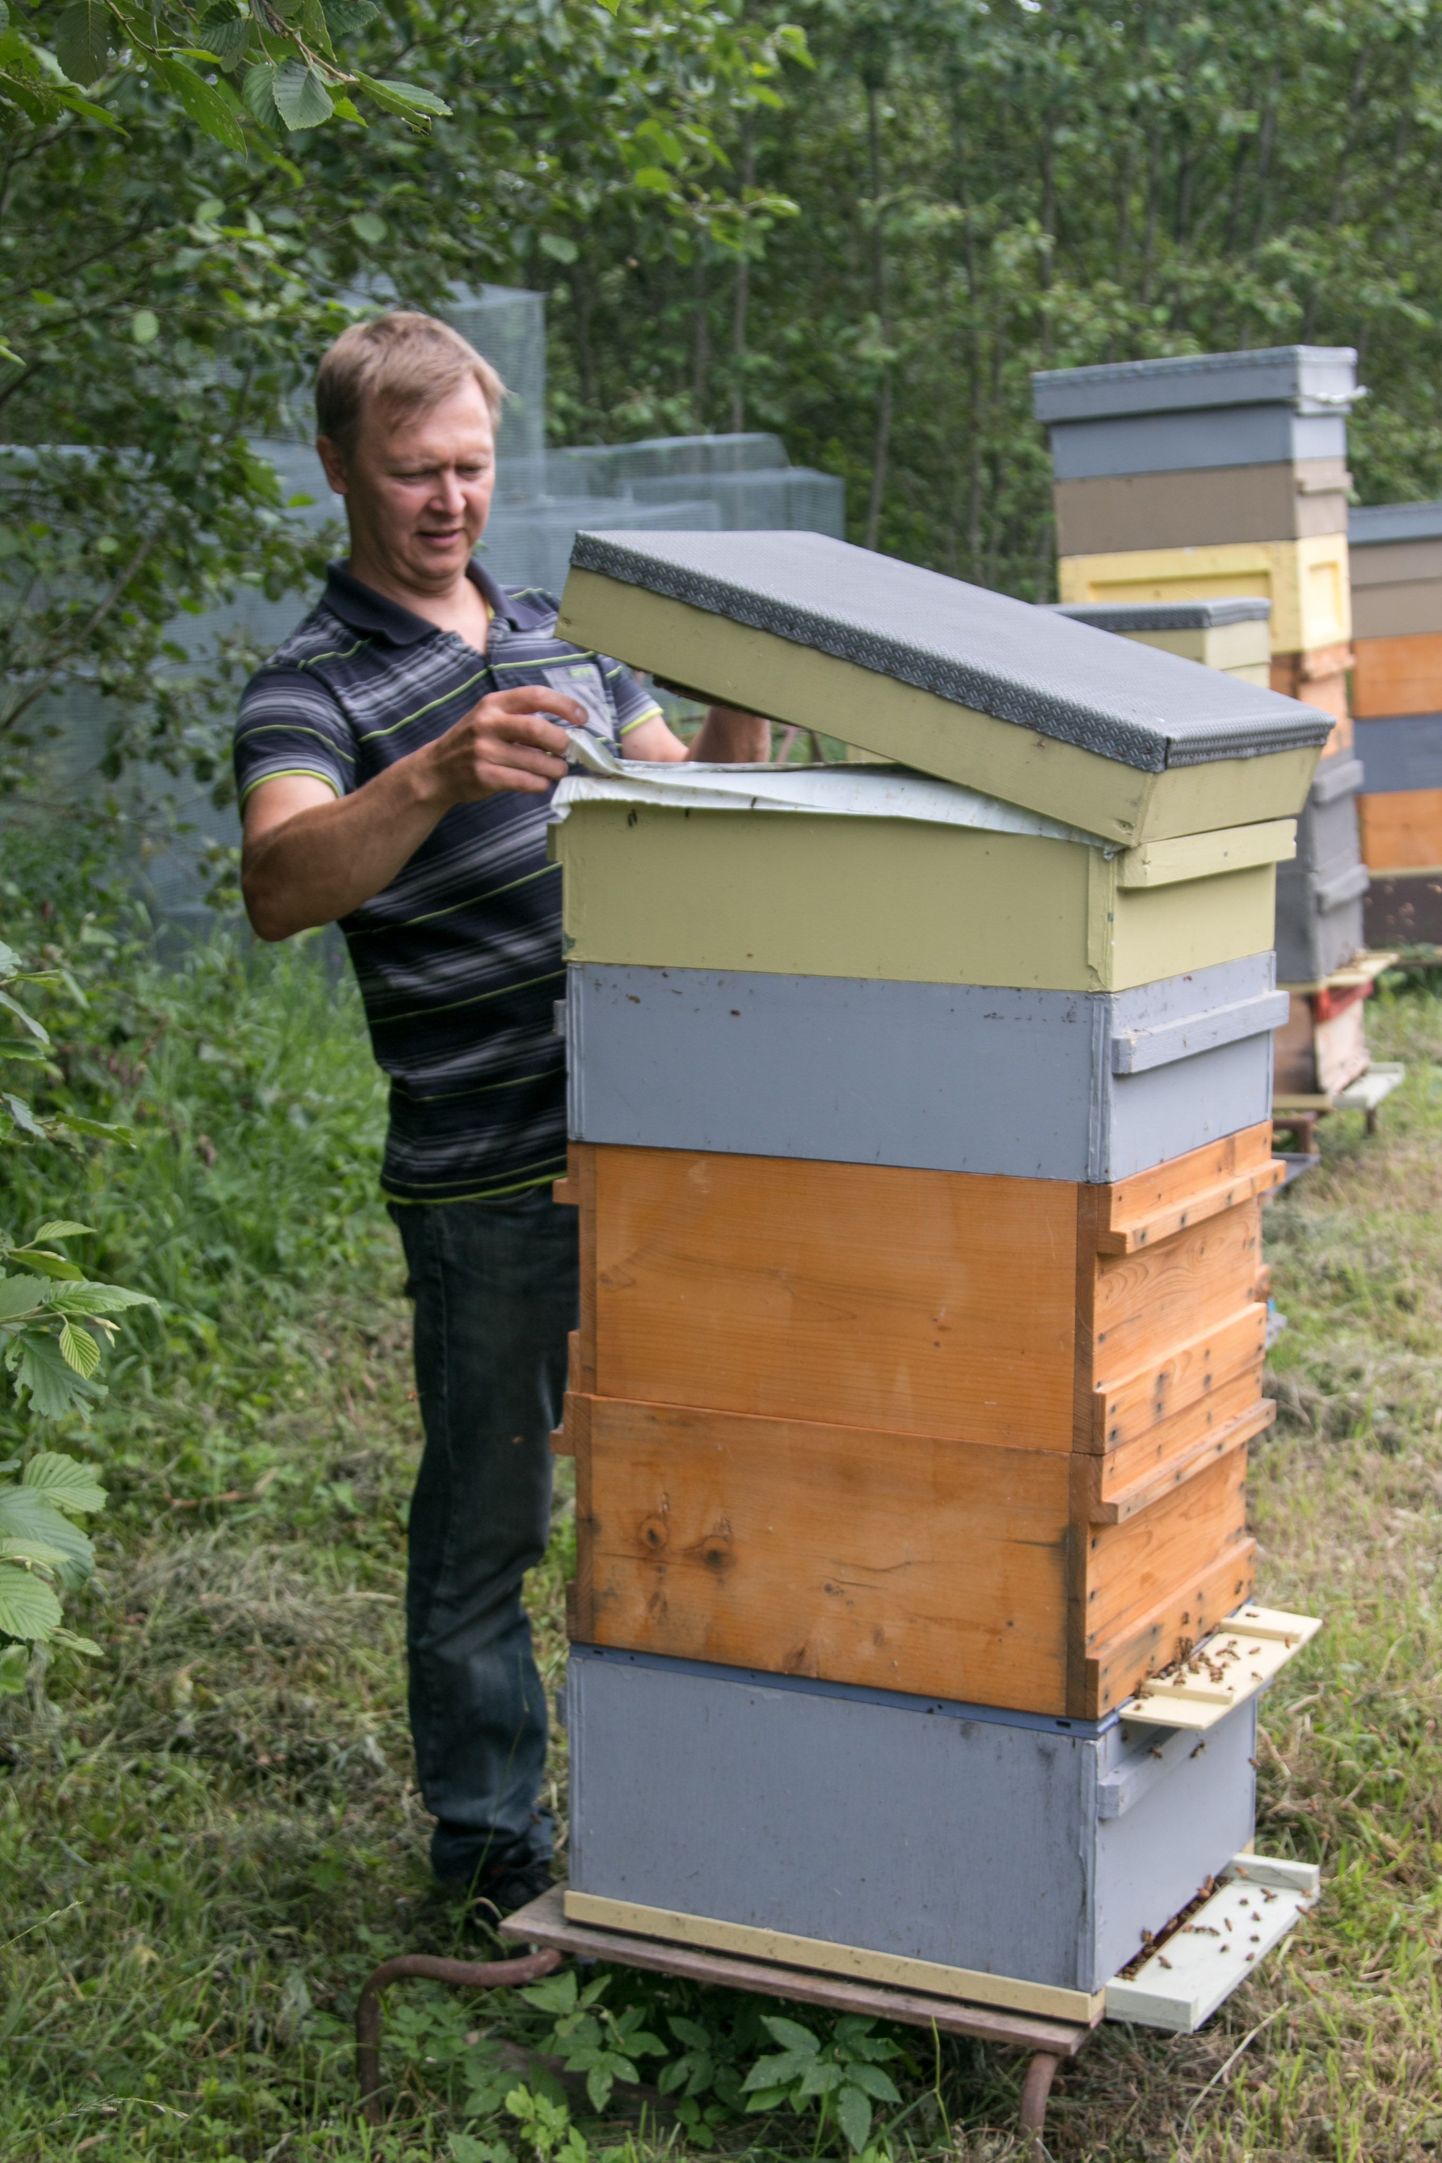 Ligi 30 aastat mesindusega tegelenud Rein Männiste mesilaspered, keda on 300 ringis, elavad korpustarudes, mida talus kohapeal ka valmistatakse. Tarud on paigaldatud laiali 22 kohta, enamik nendest metsa, kuid ka põldude äärde.